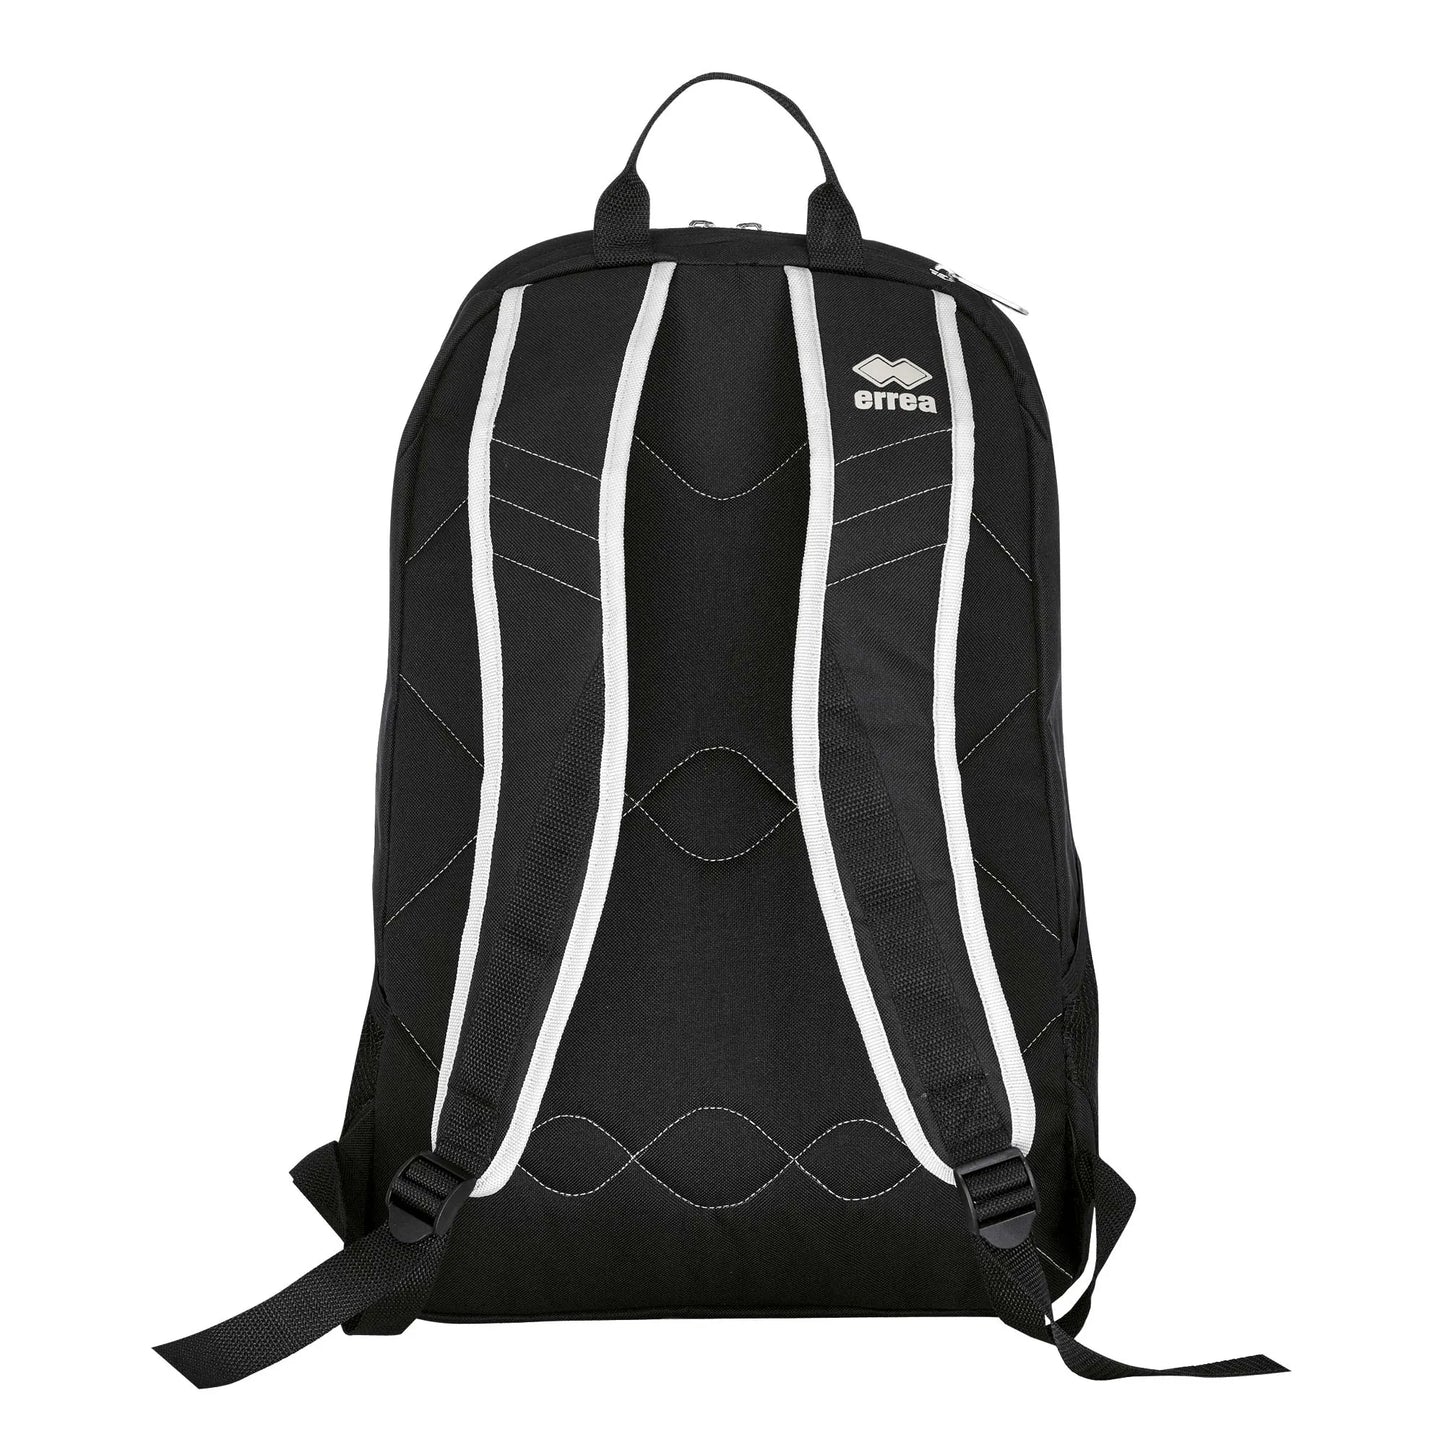 Errea backpack